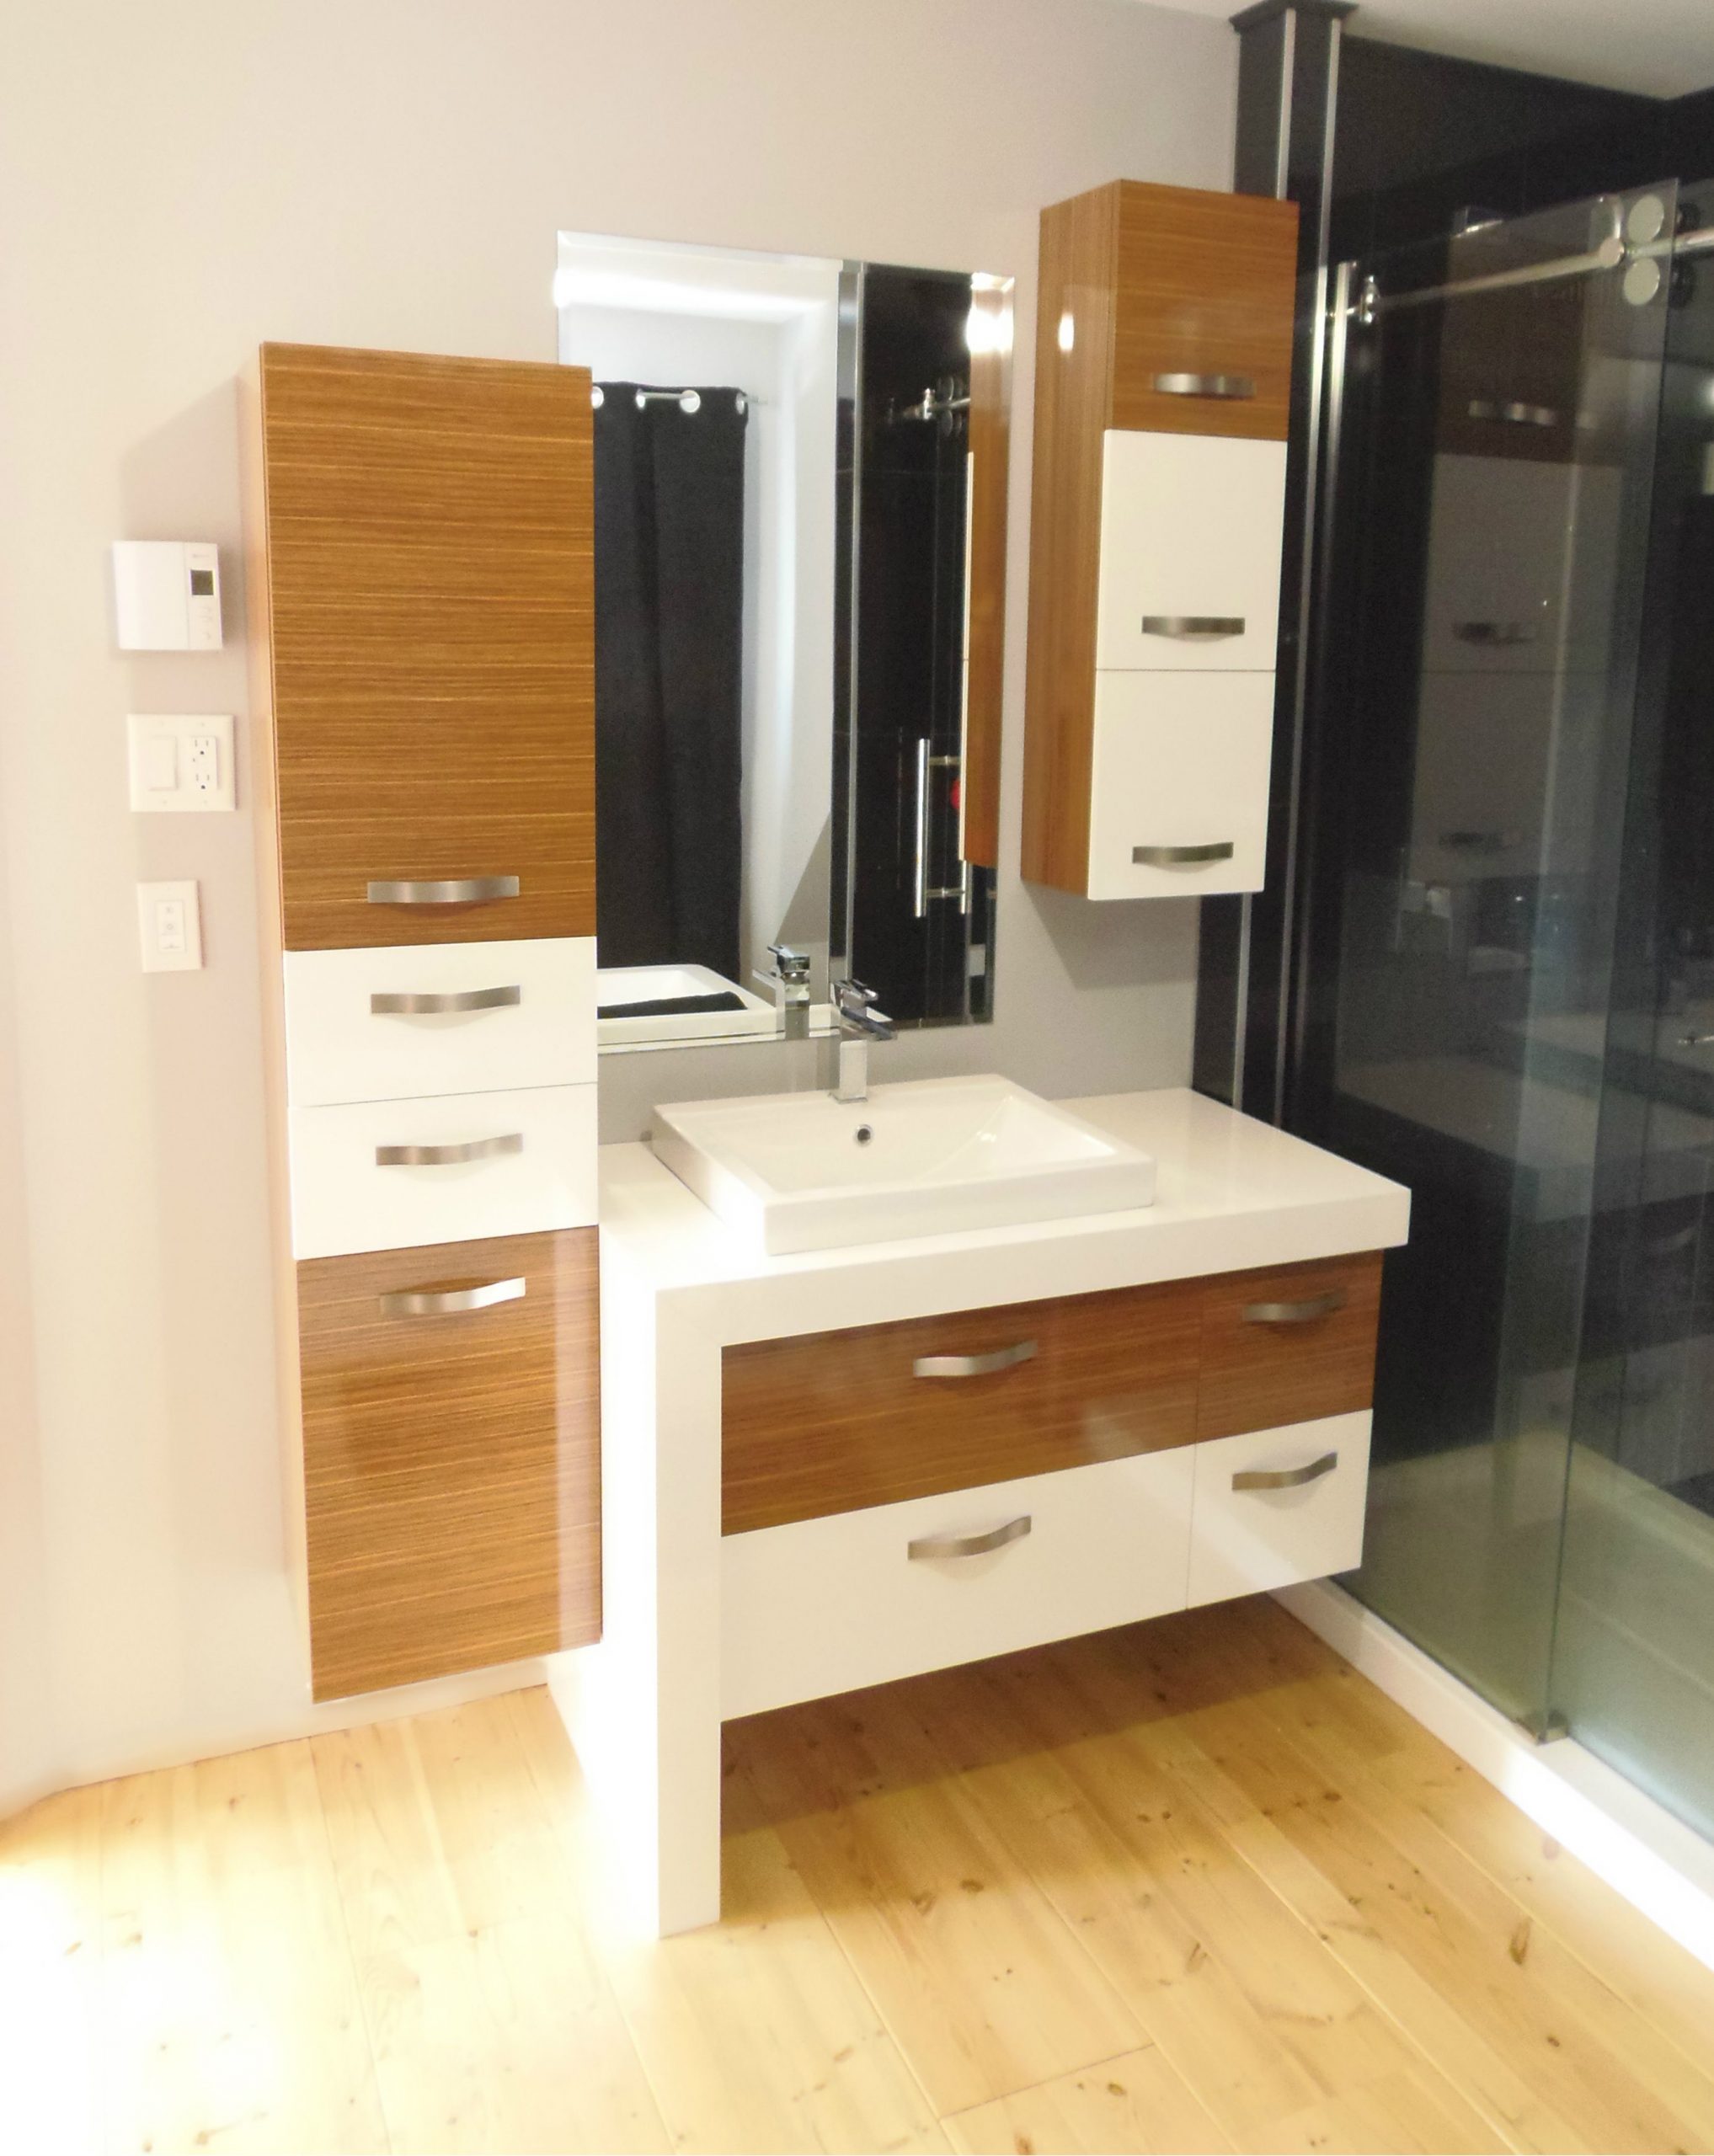 Salle De Bain Moderne | Interior Design Dining Room, Bathroom Cabinets ... concernant Lavabo Salle De Bain Moderne Usage